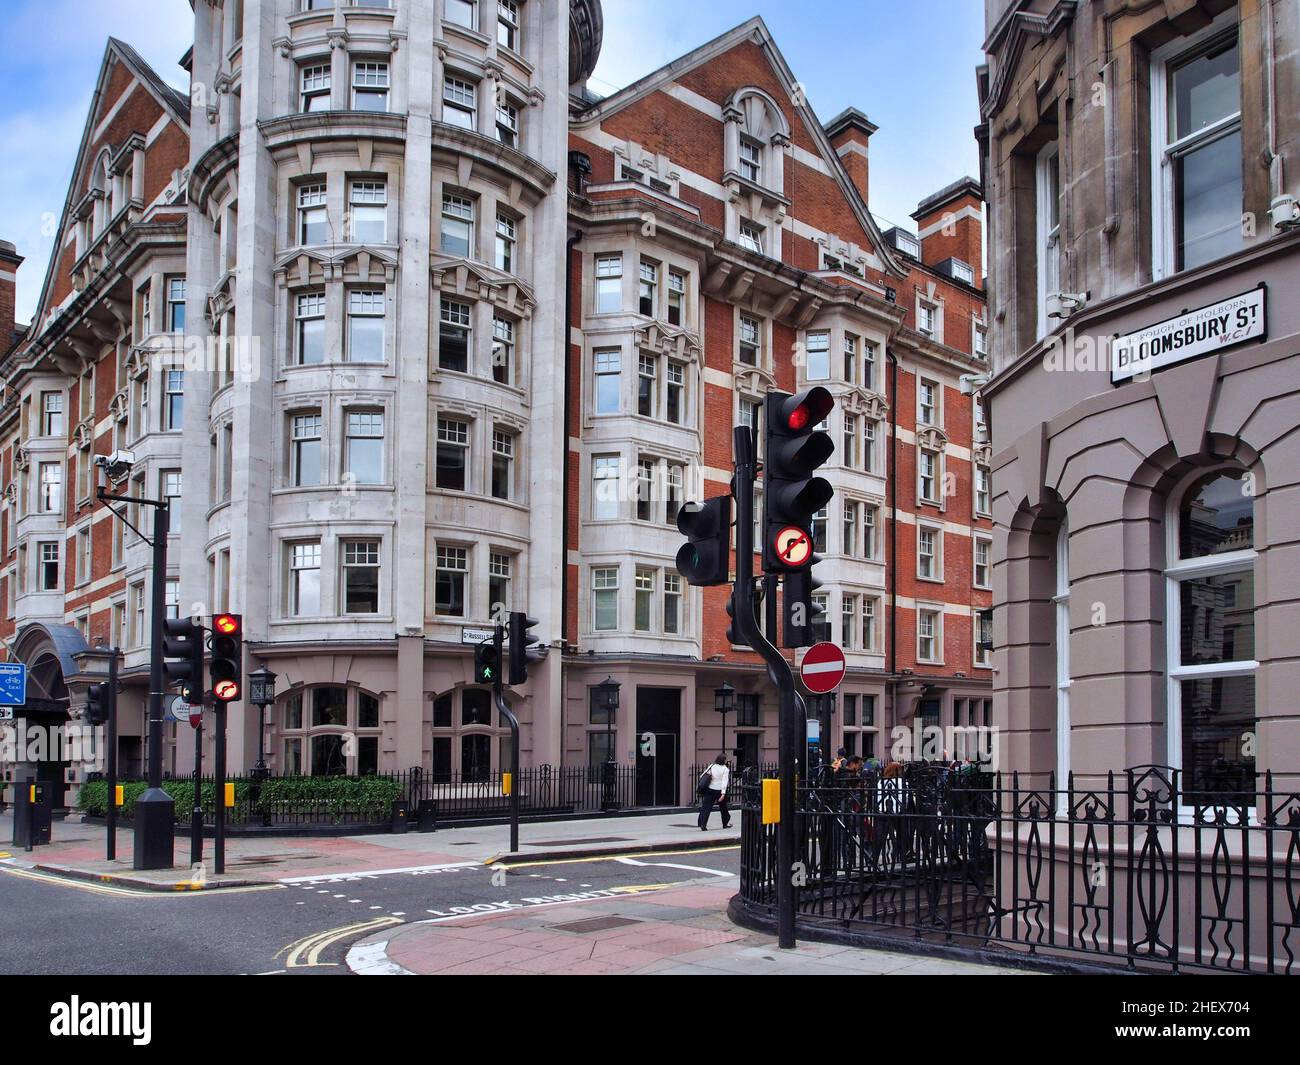 Vieux immeubles typiques dans le quartier de Bloomsbury à Londres, en Angleterre Banque D'Images